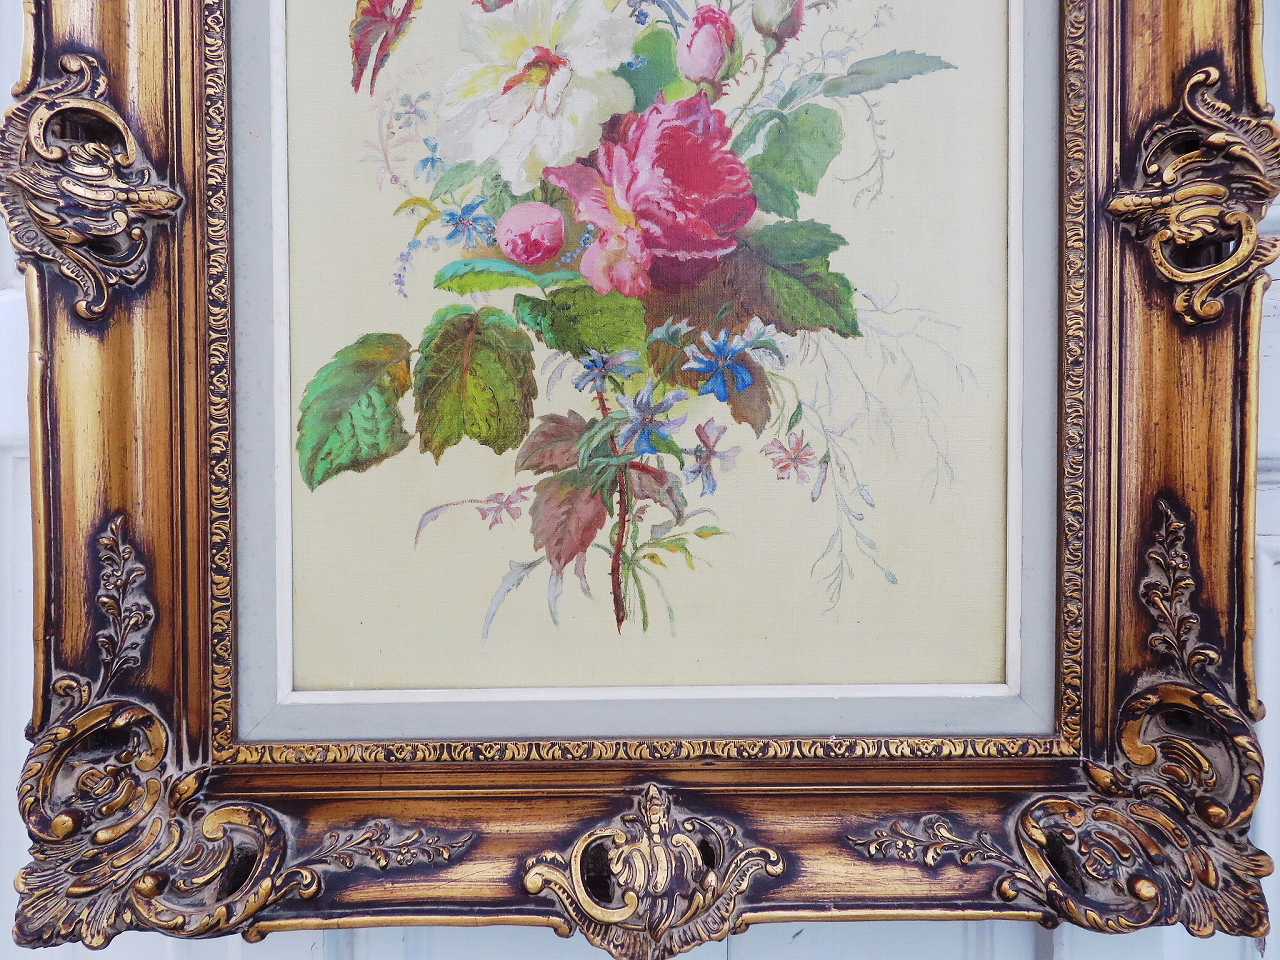 アールヌーヴォー油絵 『薔薇のある風景』 - 薔薇と天使のアンティーク